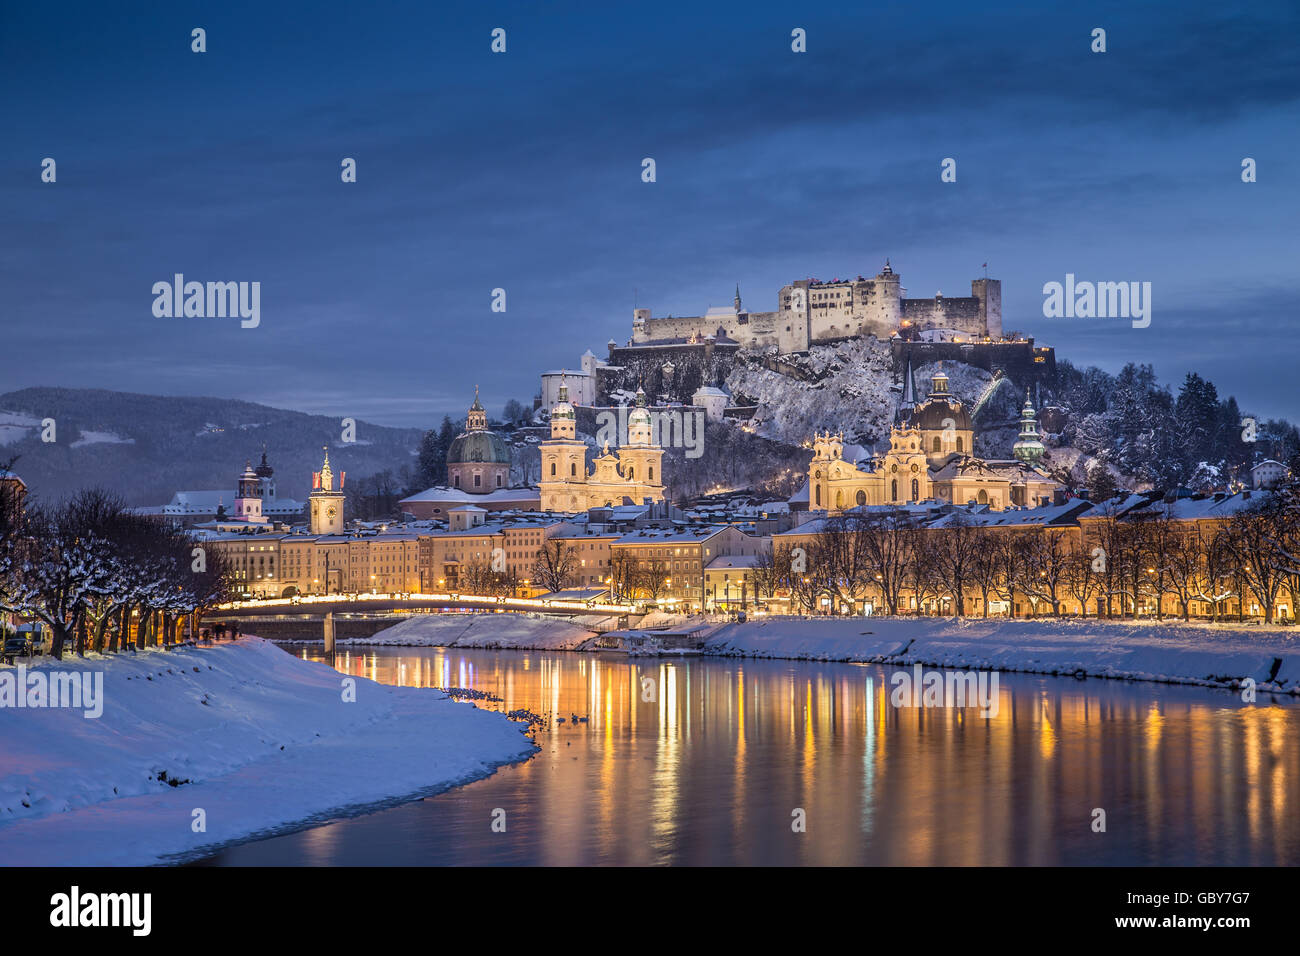 Klassische Ansicht von der historischen Stadt Salzburg mit Salzach Fluss im Winter während der blauen Stunde, Salzburger Land, Österreich Stockfoto